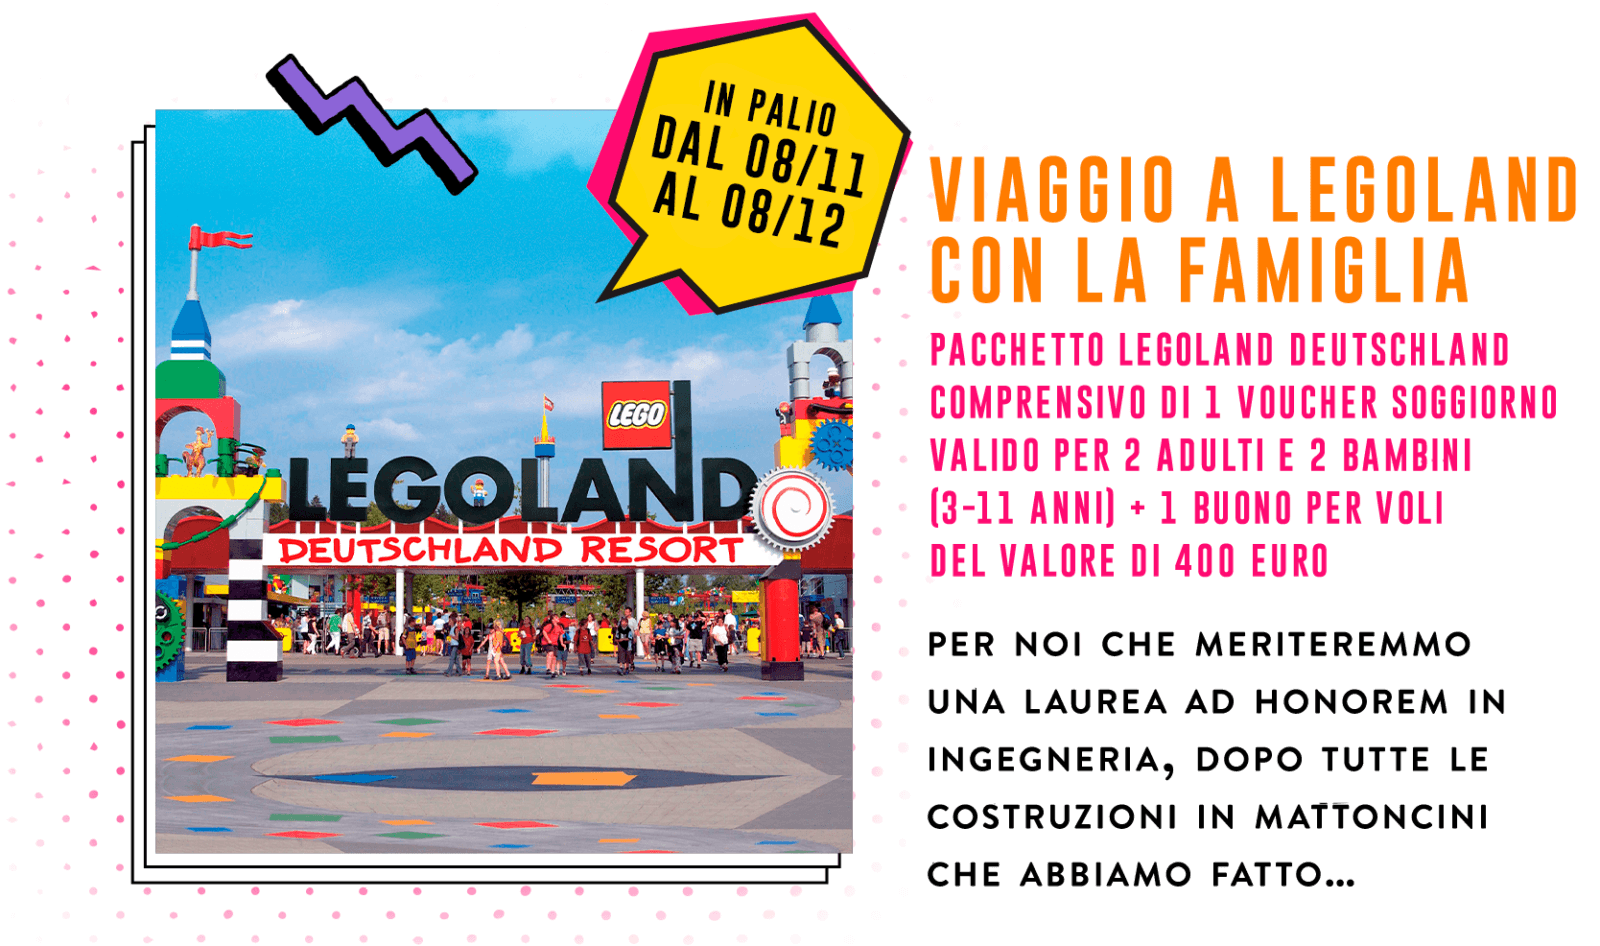 Concorso Plasmon biscotto "dei grandi": vinci premi Casio, Caran d’Ache, Polaroid, Smeg, Doniselli e viaggi a Legoland! 7